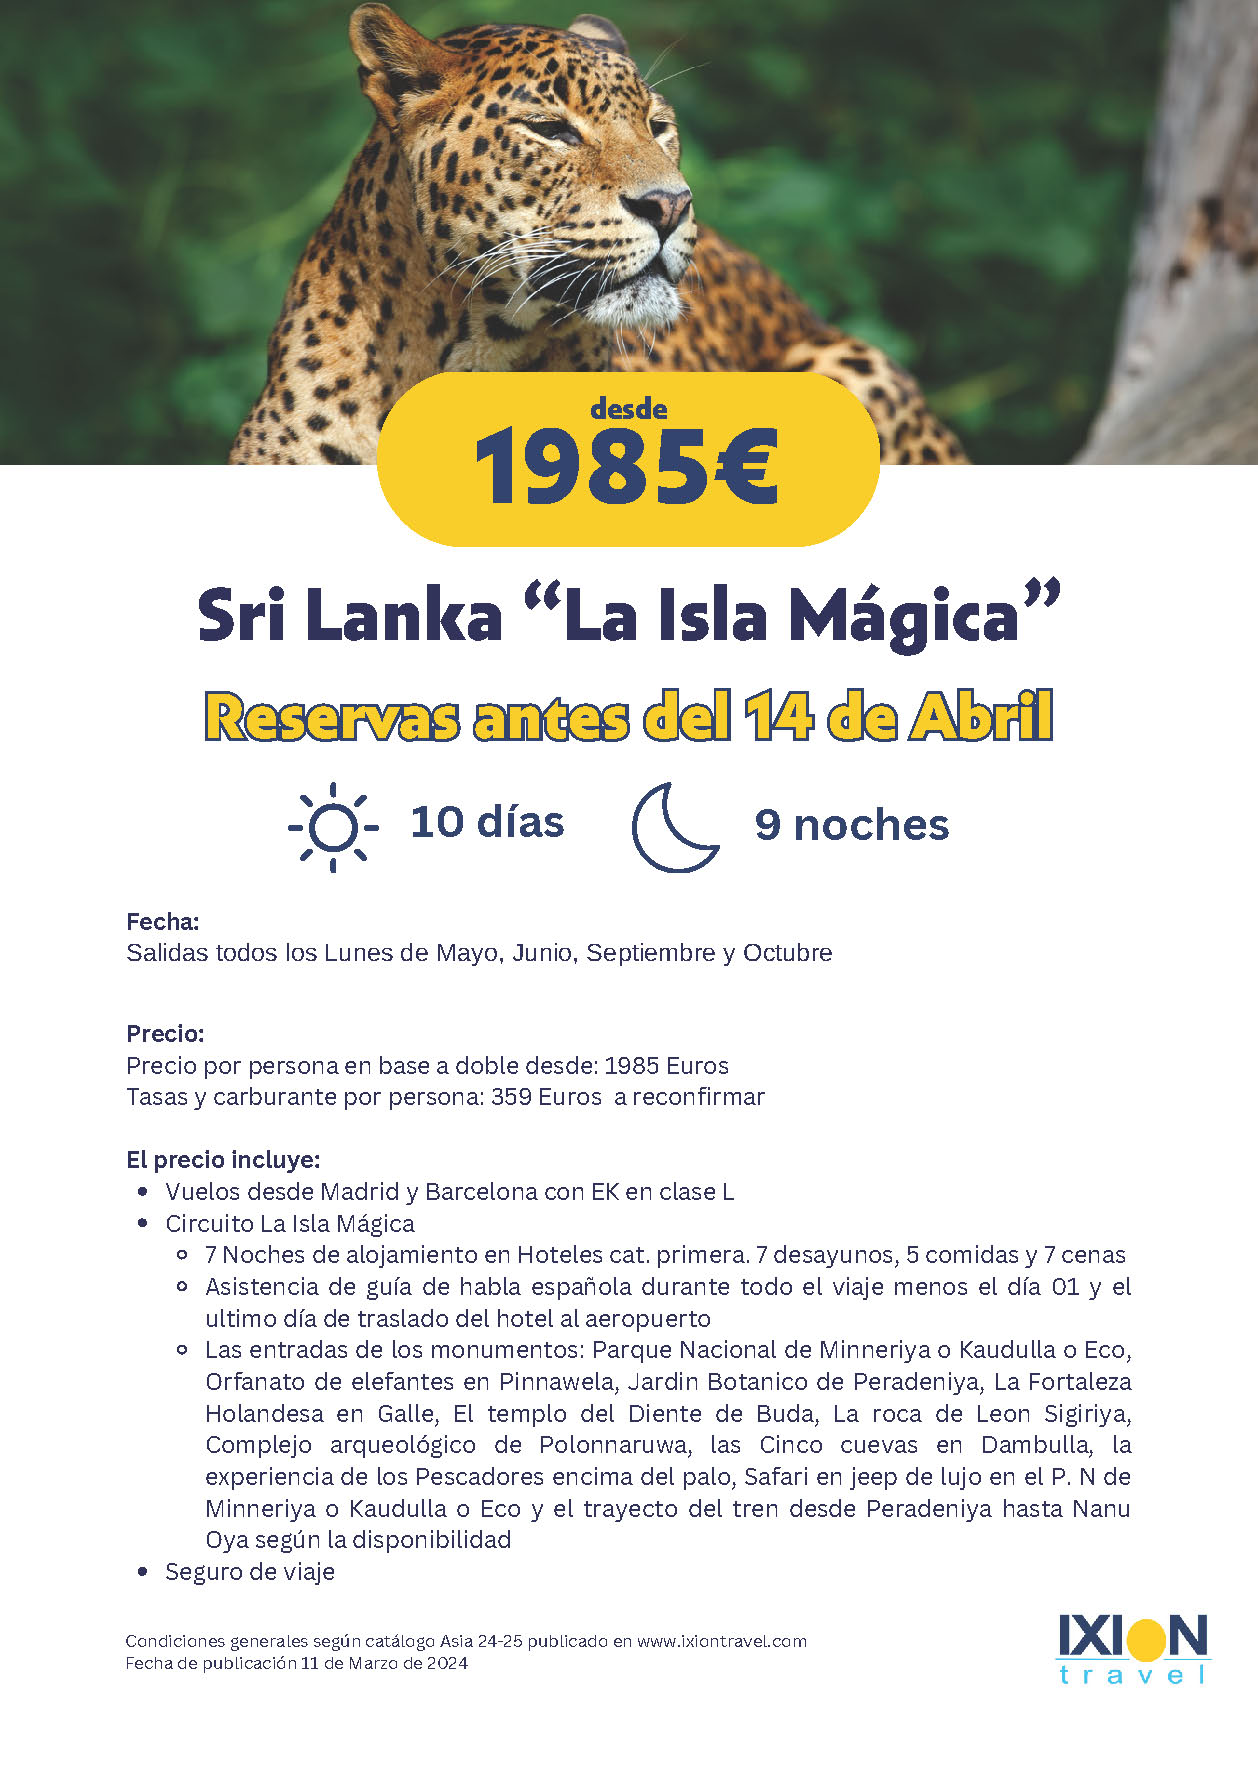 Oferta Ixion Travel circuito Sri Lanka 10 dias salidas Mayo Junio Septiembre Octubre 2024 desde Barcelona y Madrid vuelos Emirates